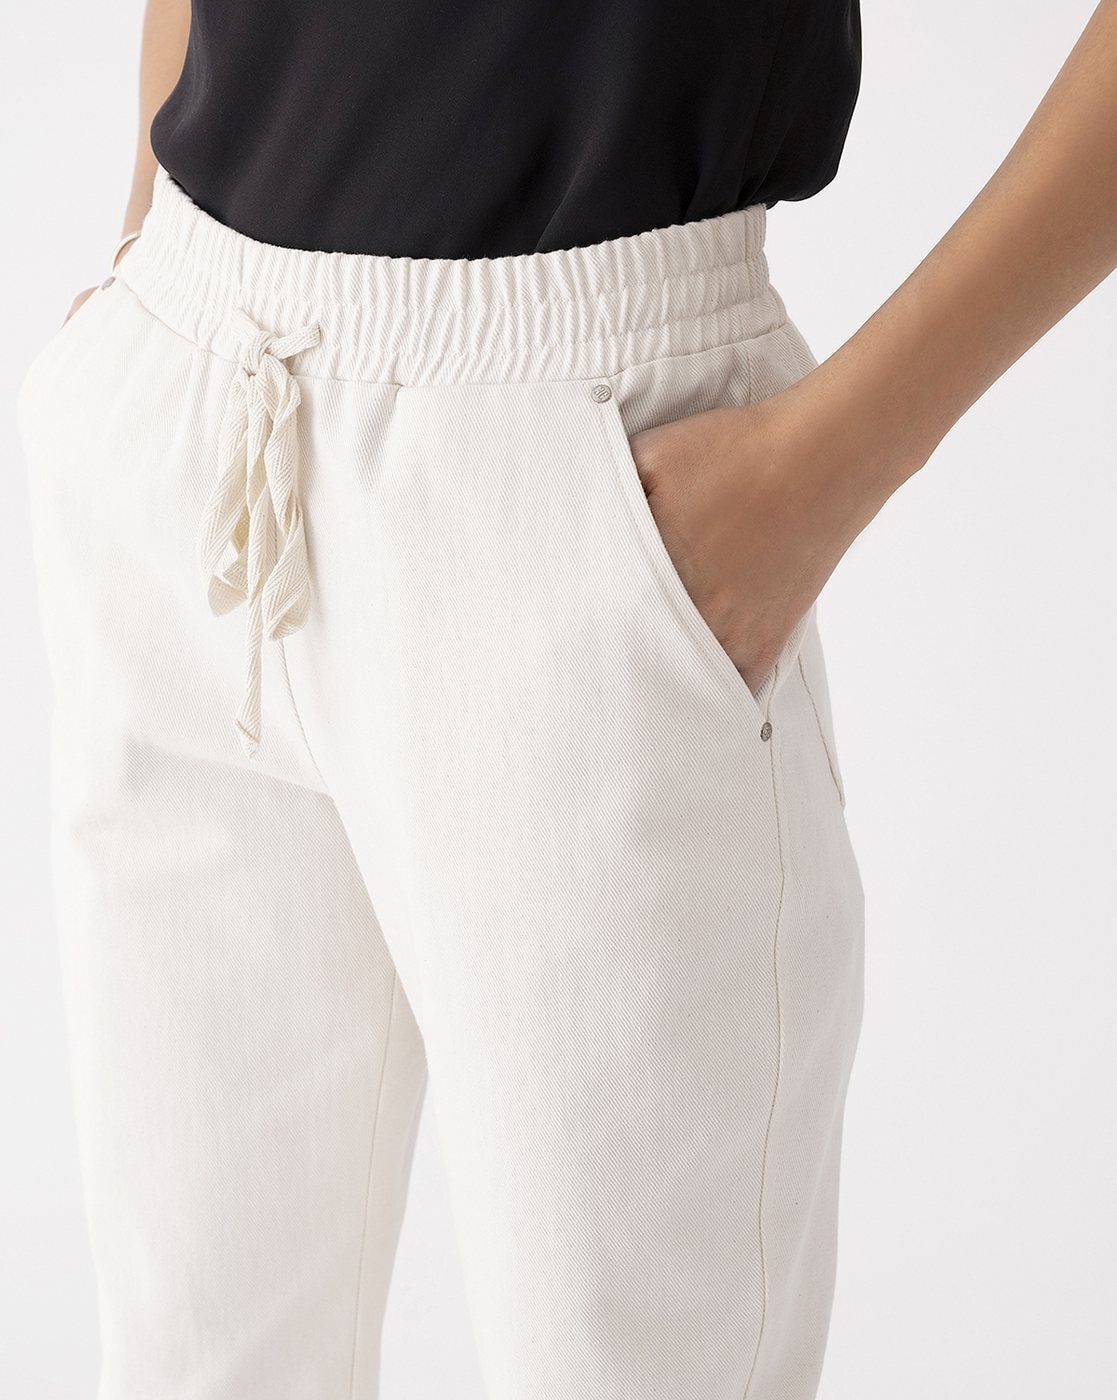 Buy Ecru Trousers & Pants for Women by ProEarth Online